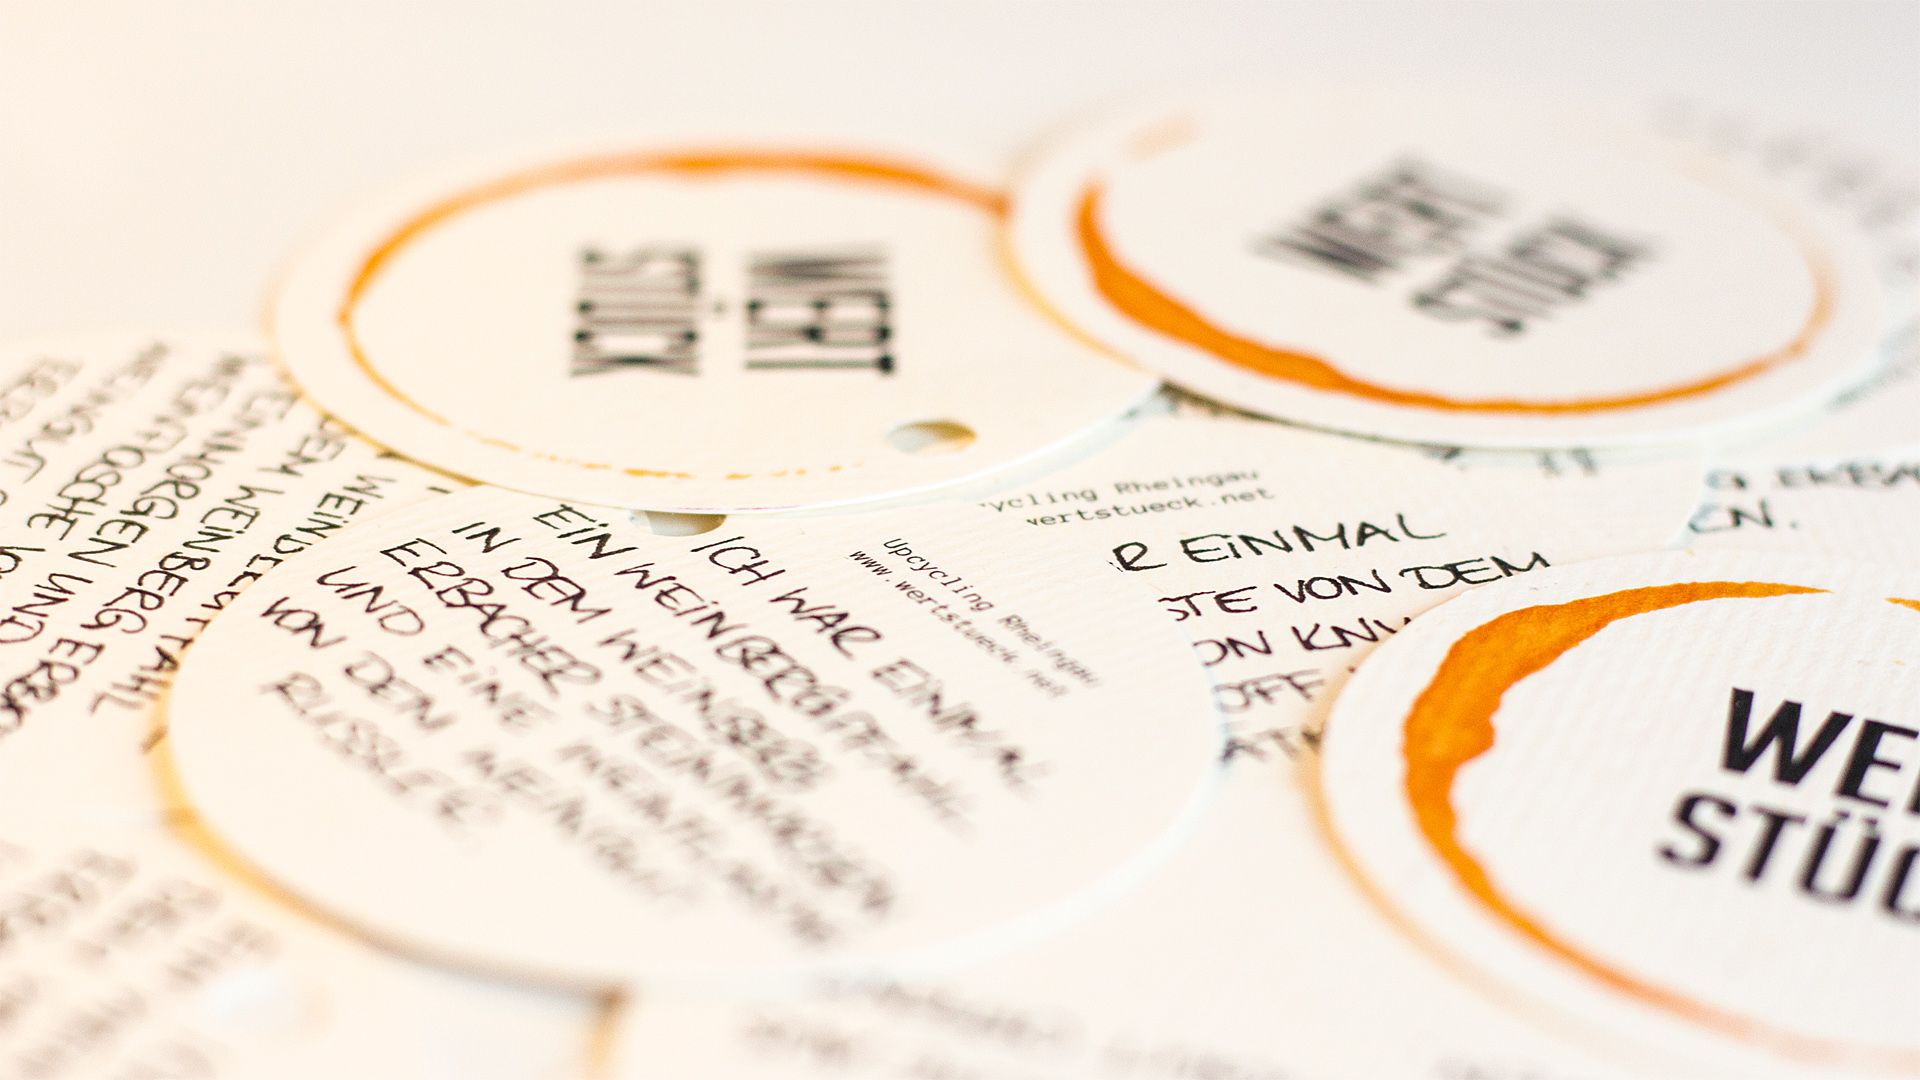 Papiermarken mit Beschreibung und Logo Wertstück